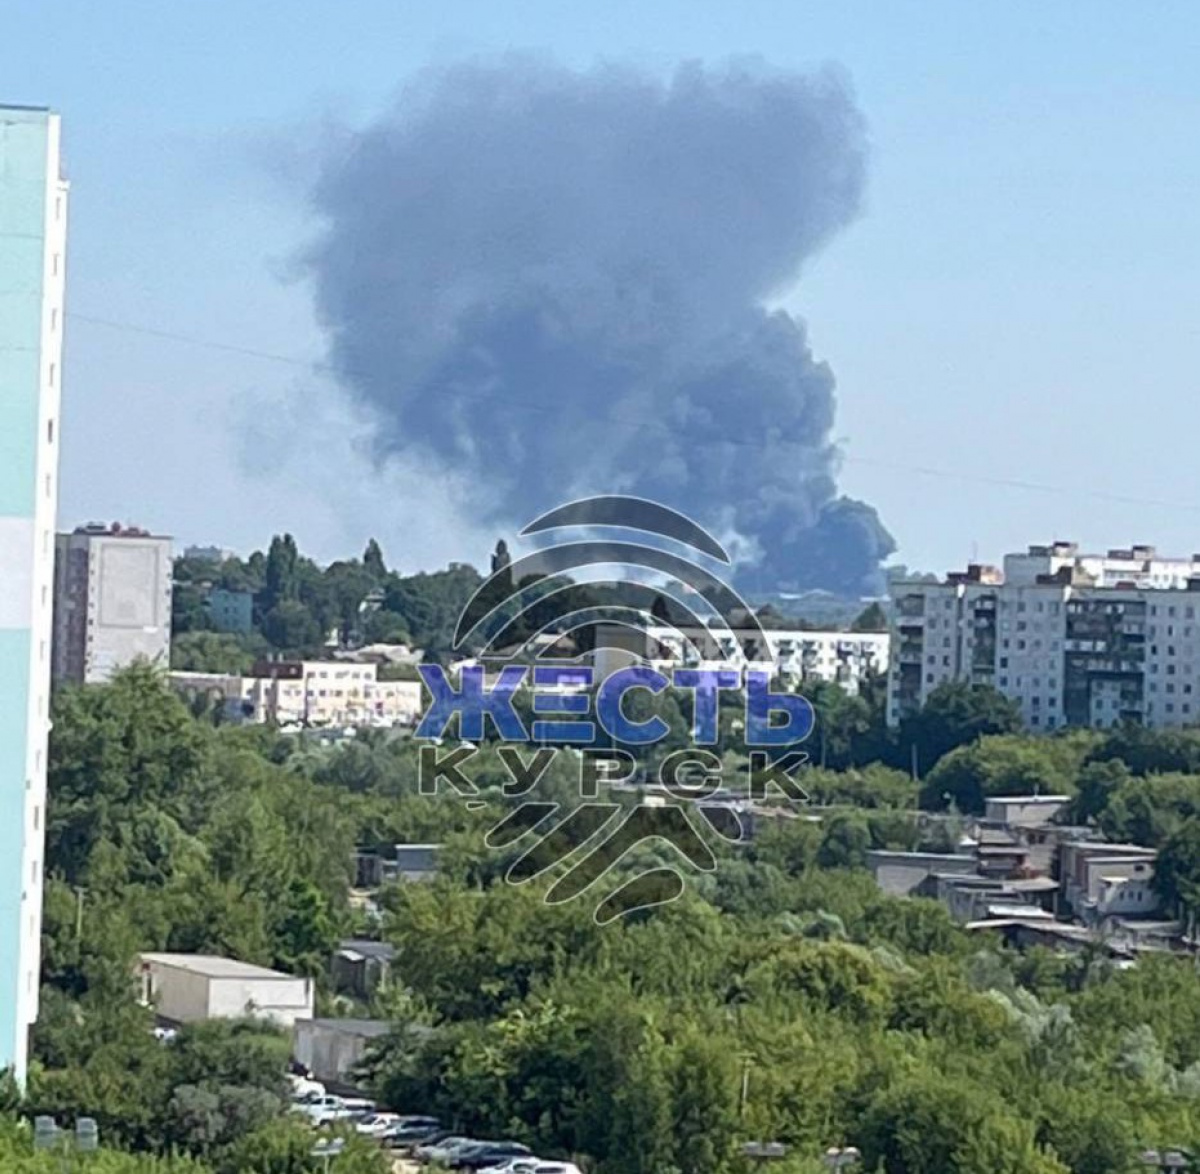 В самом центре Курска, предположительно, горит военная база. Фото: Жесть Курск/Telegram